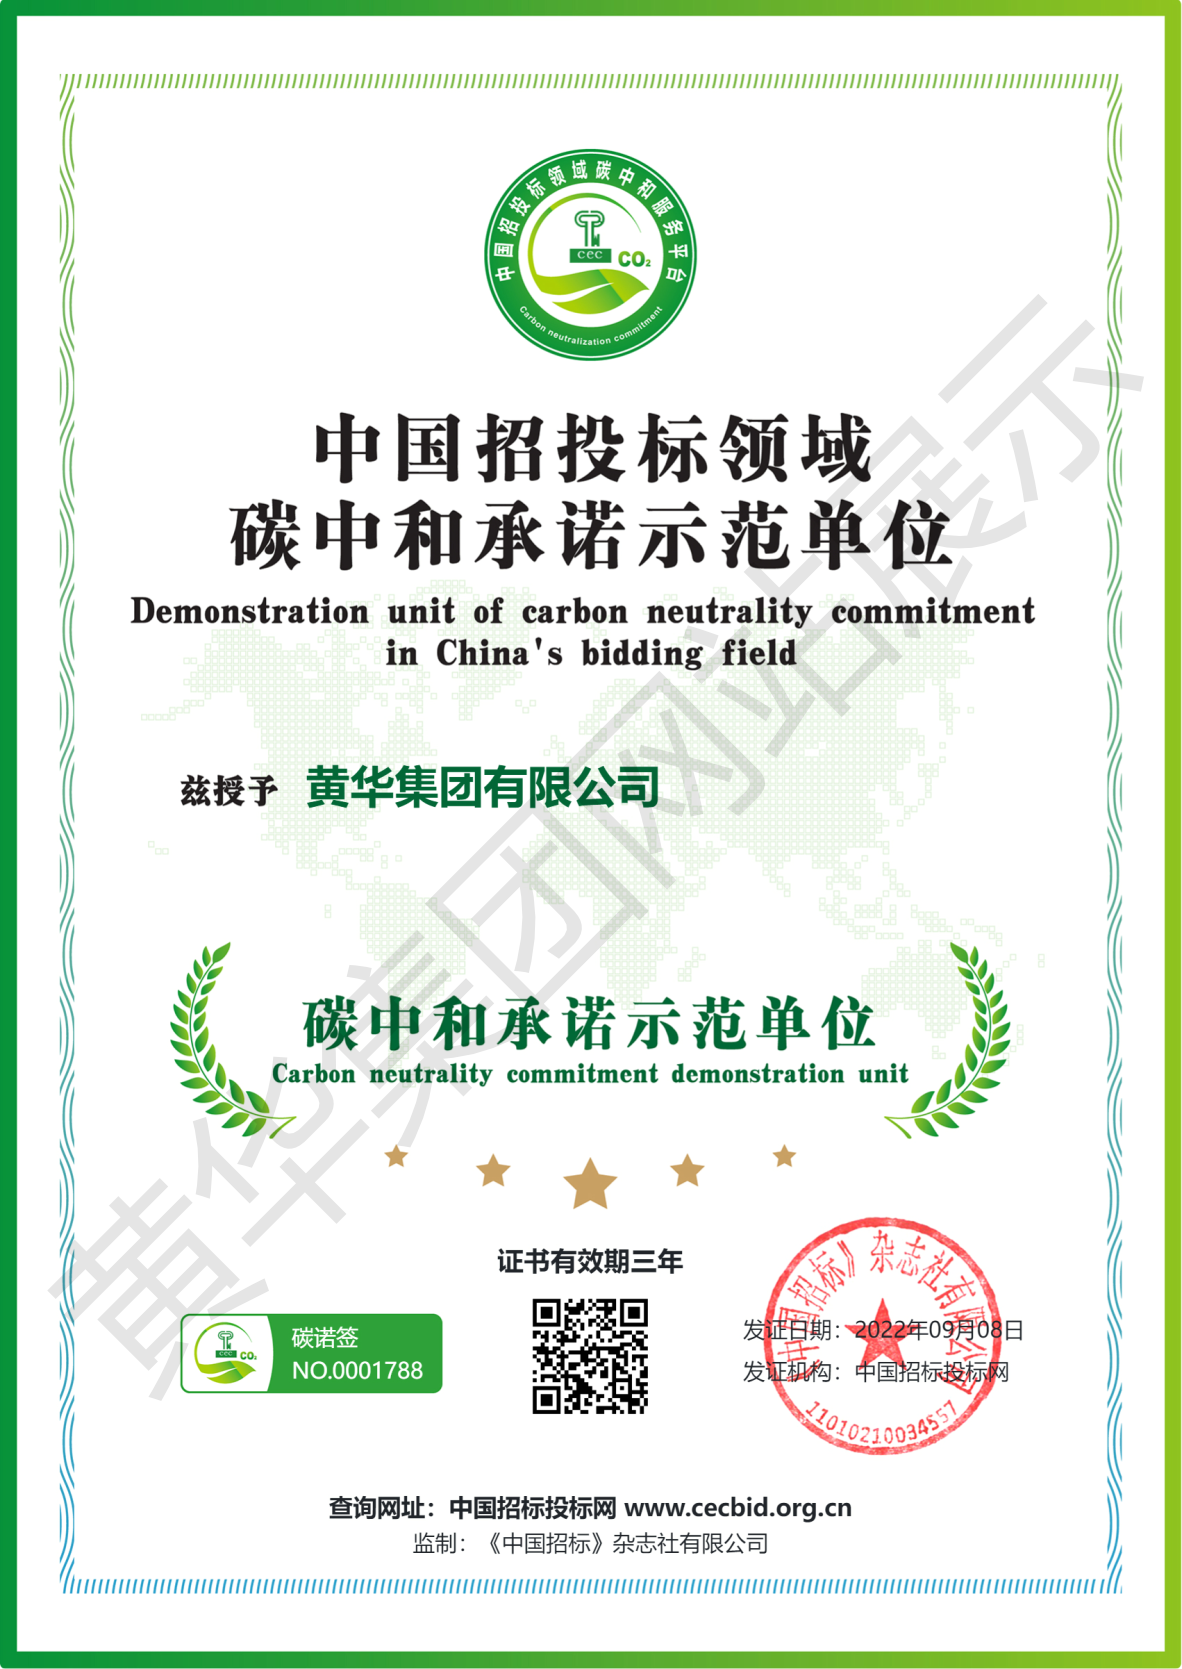 爱体育(China)官方网站碳中和承诺示范单位证书